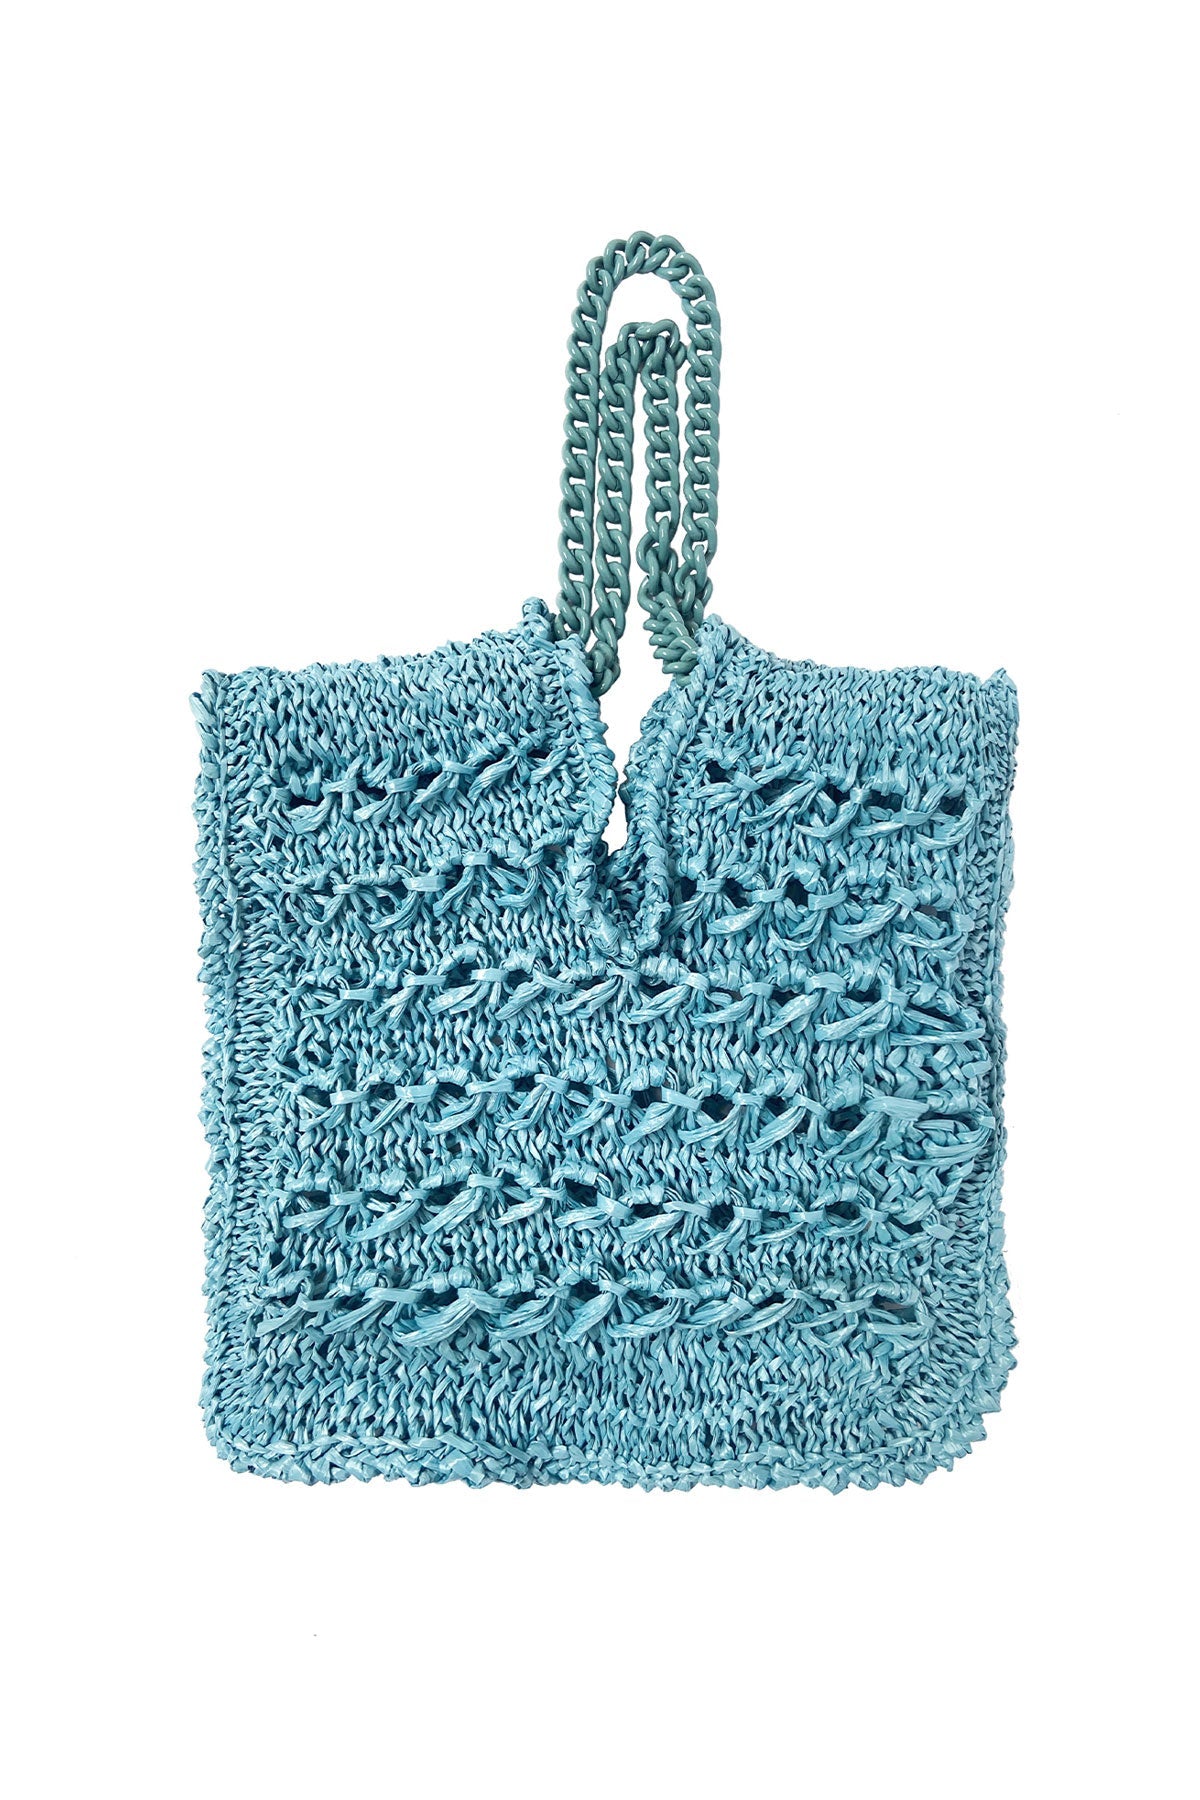 Eucalyptus Crochet Bag - shop-olivia.com